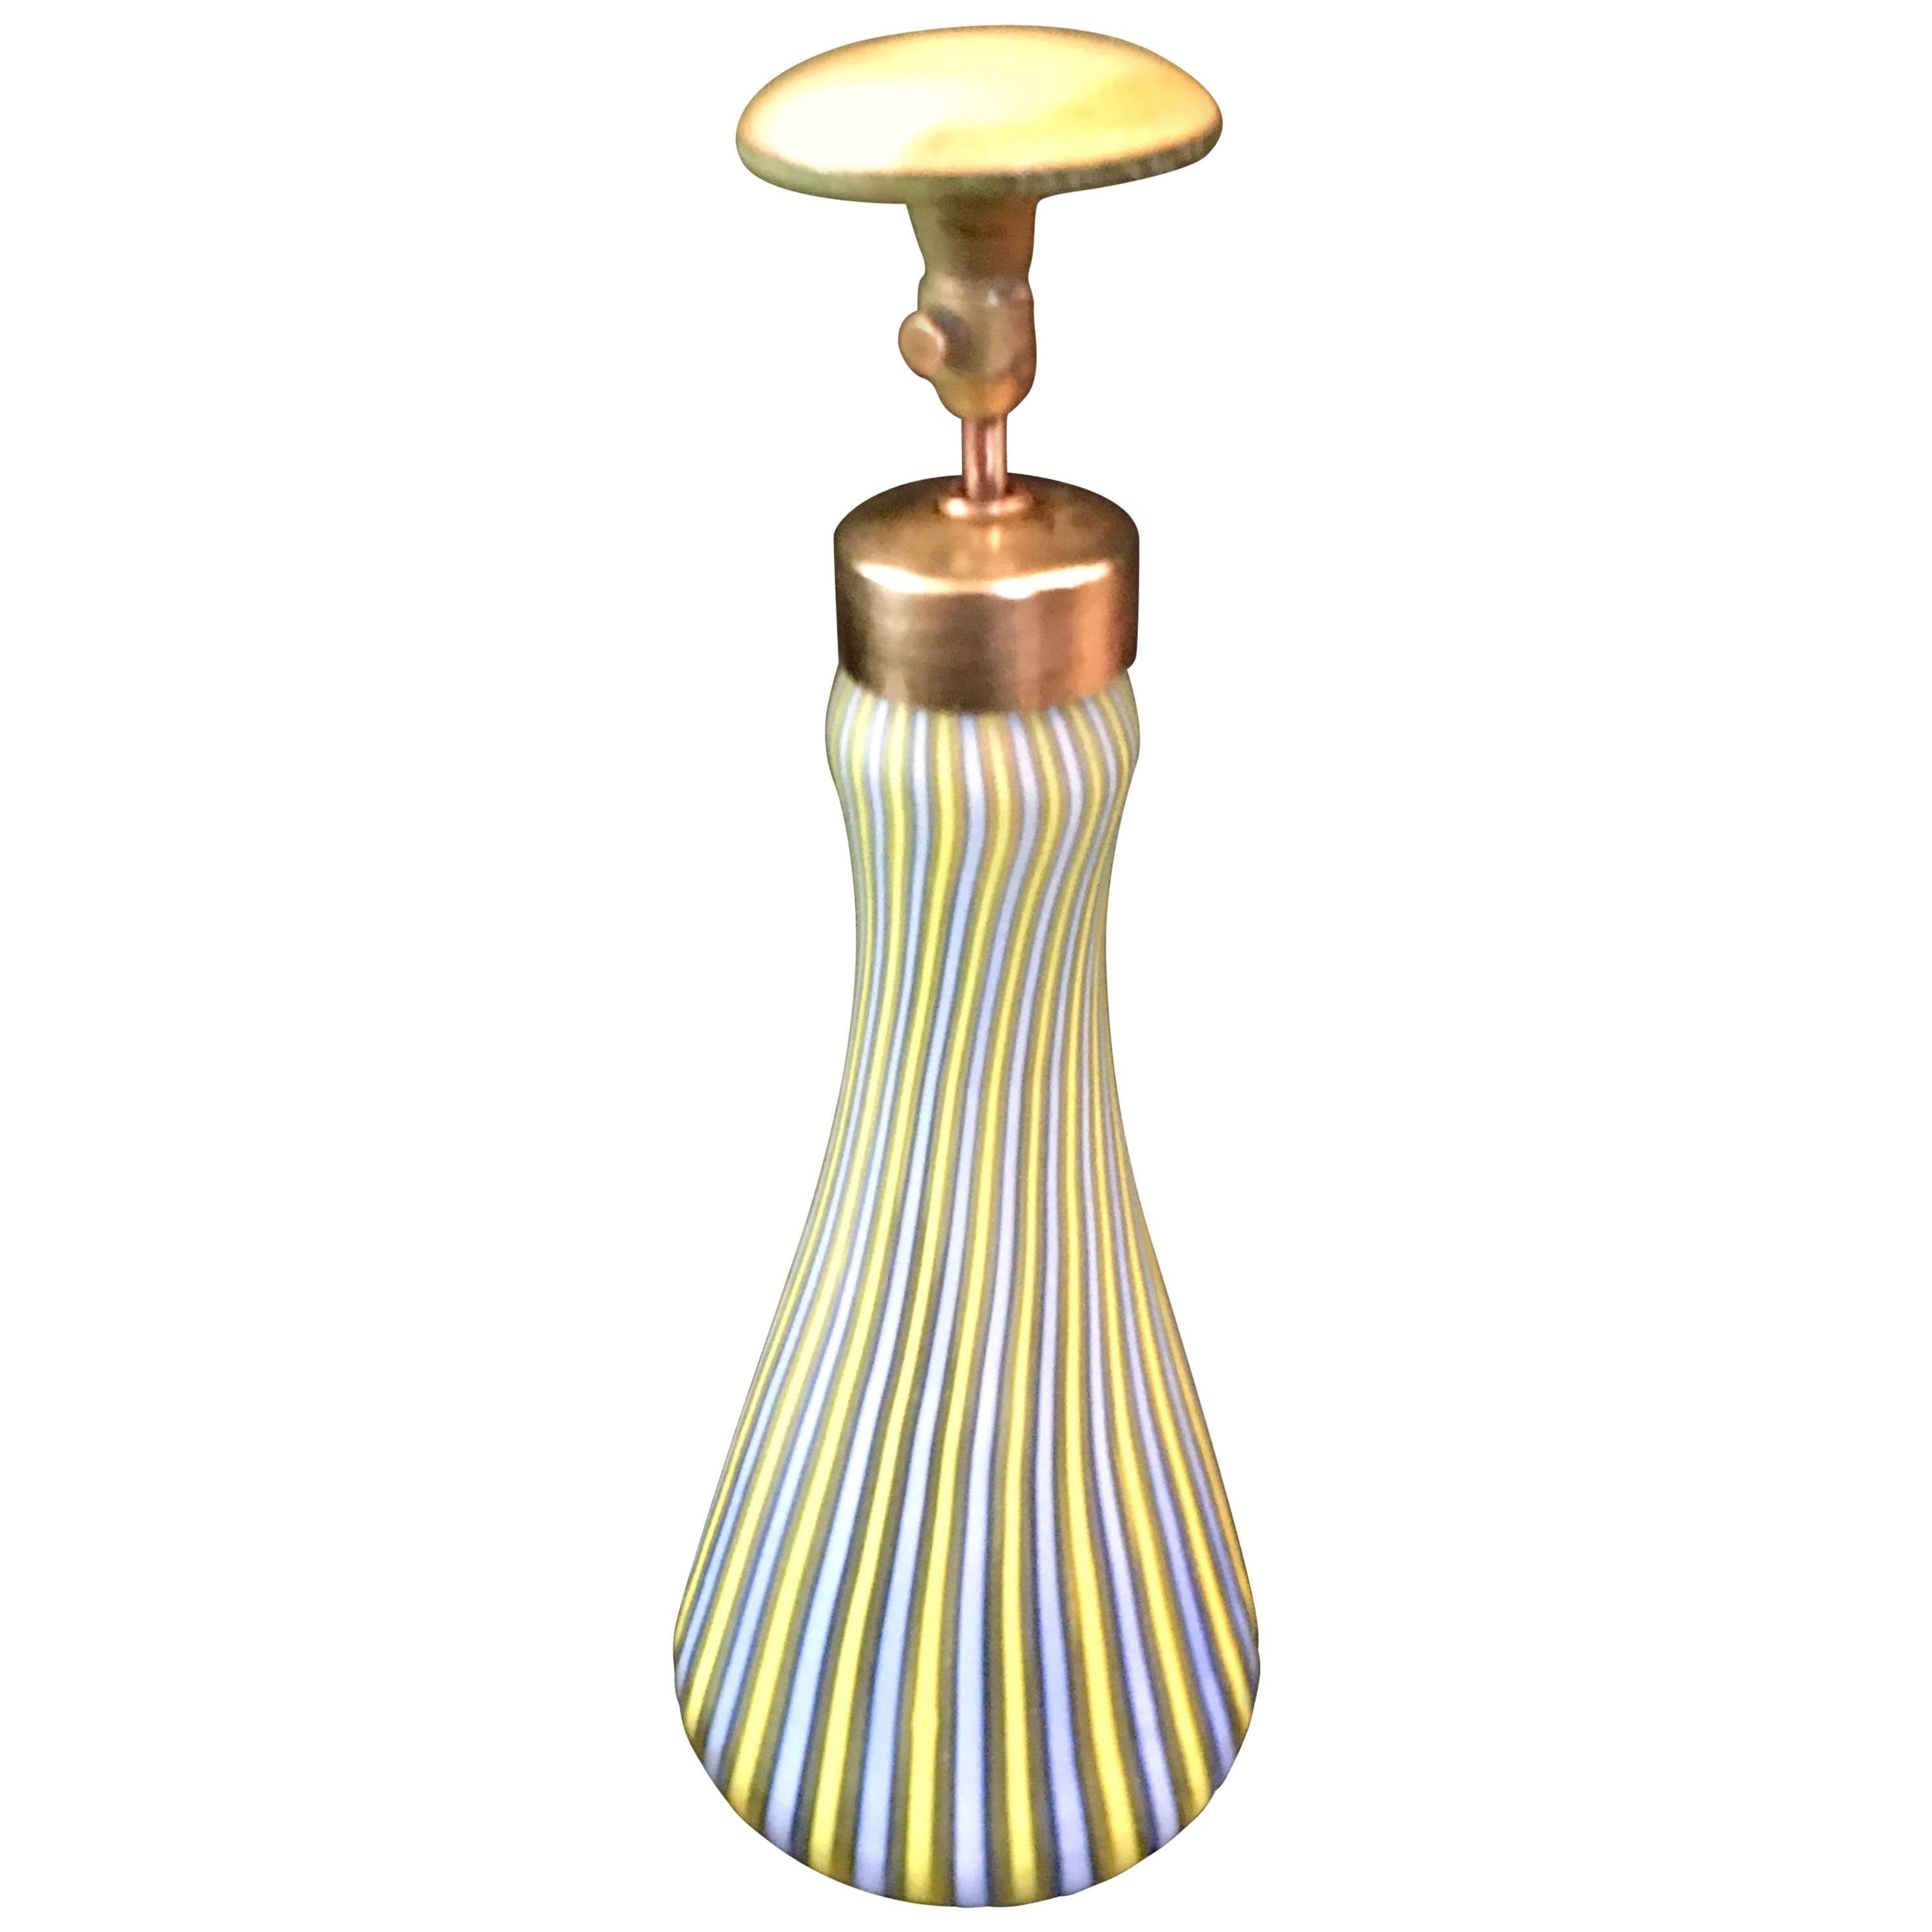 Italian Murano Glass Perfume Bottle / Atomizer